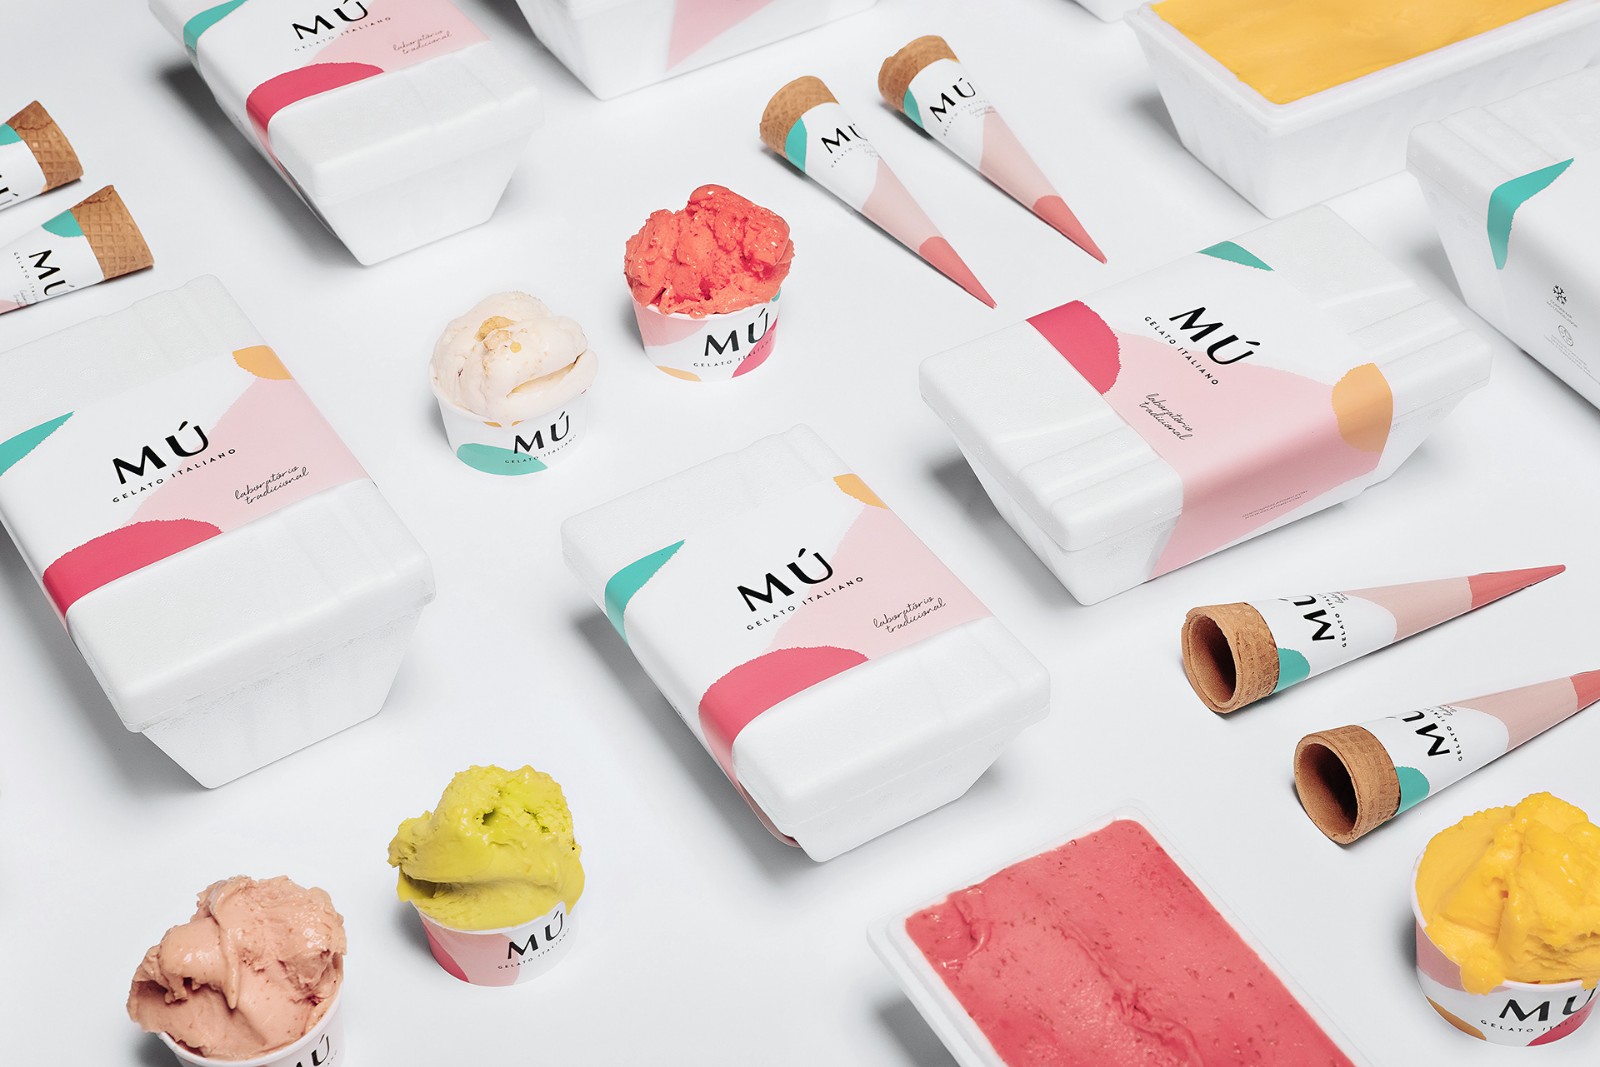 冰淇淋包装插画设计作品图集 